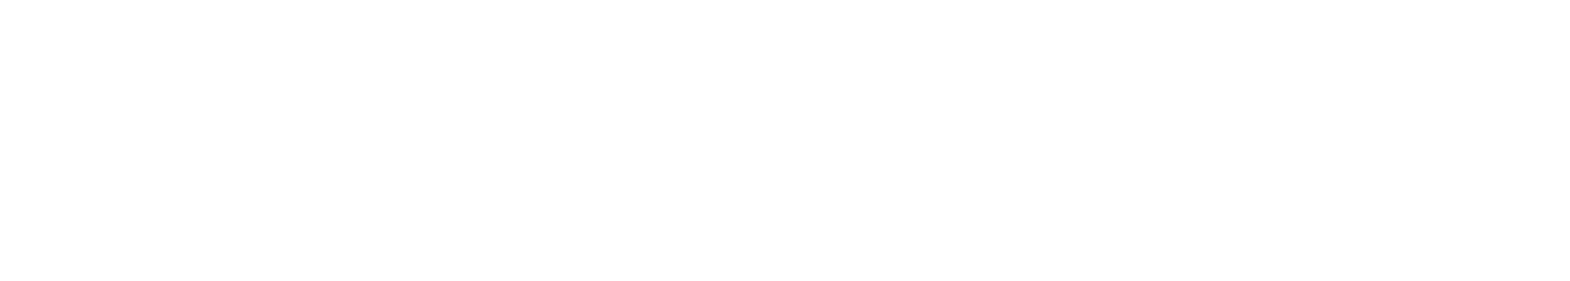 Enphase Energy
 logo large for dark backgrounds (transparent PNG)